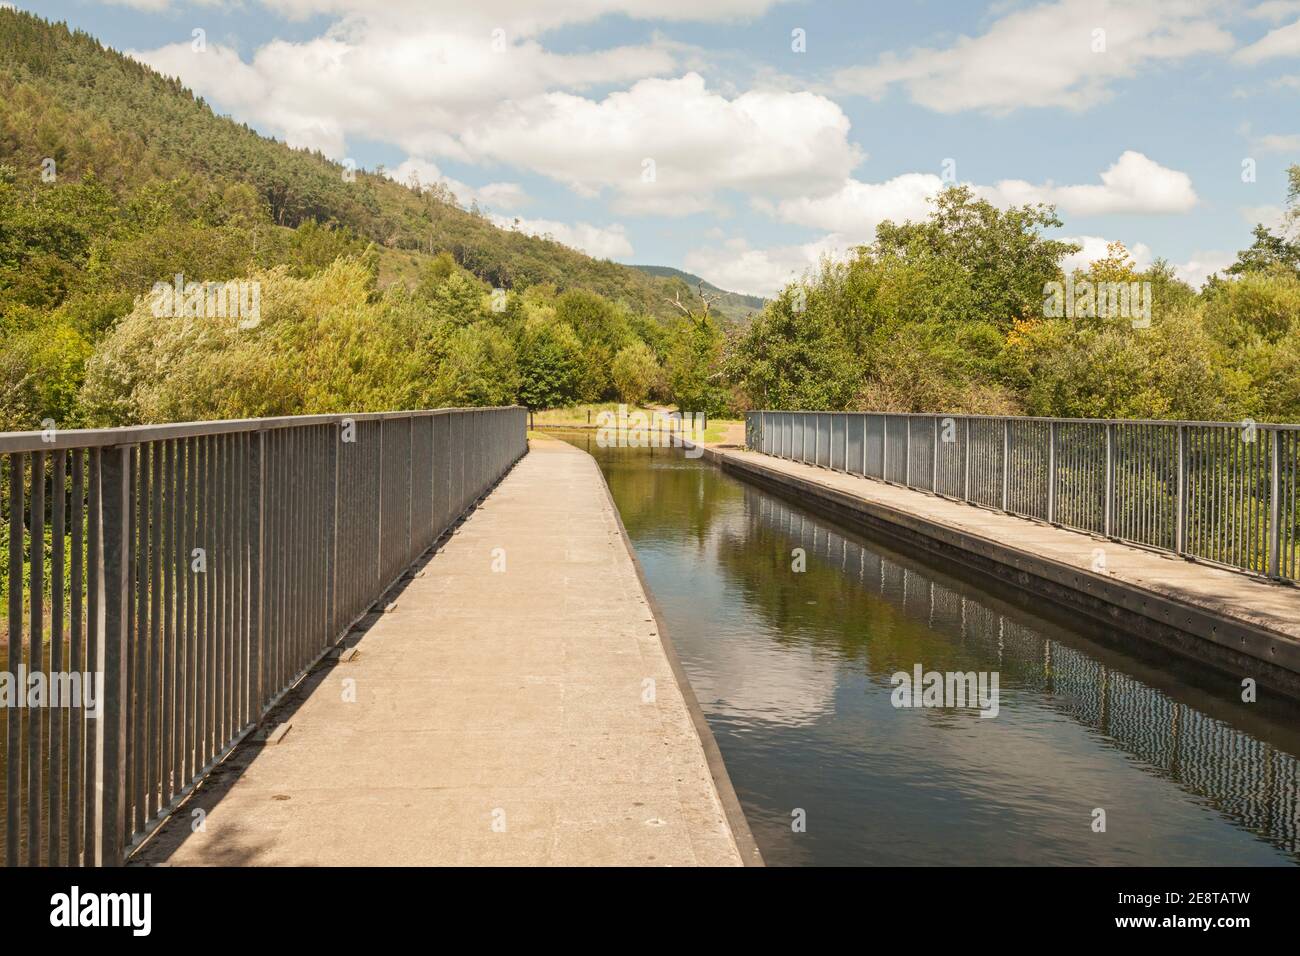 Acueducto de Ynysbwllog, Canal de Neath, Puerto de Neath Talbot, Gales del Sur, Reino Unido Foto de stock